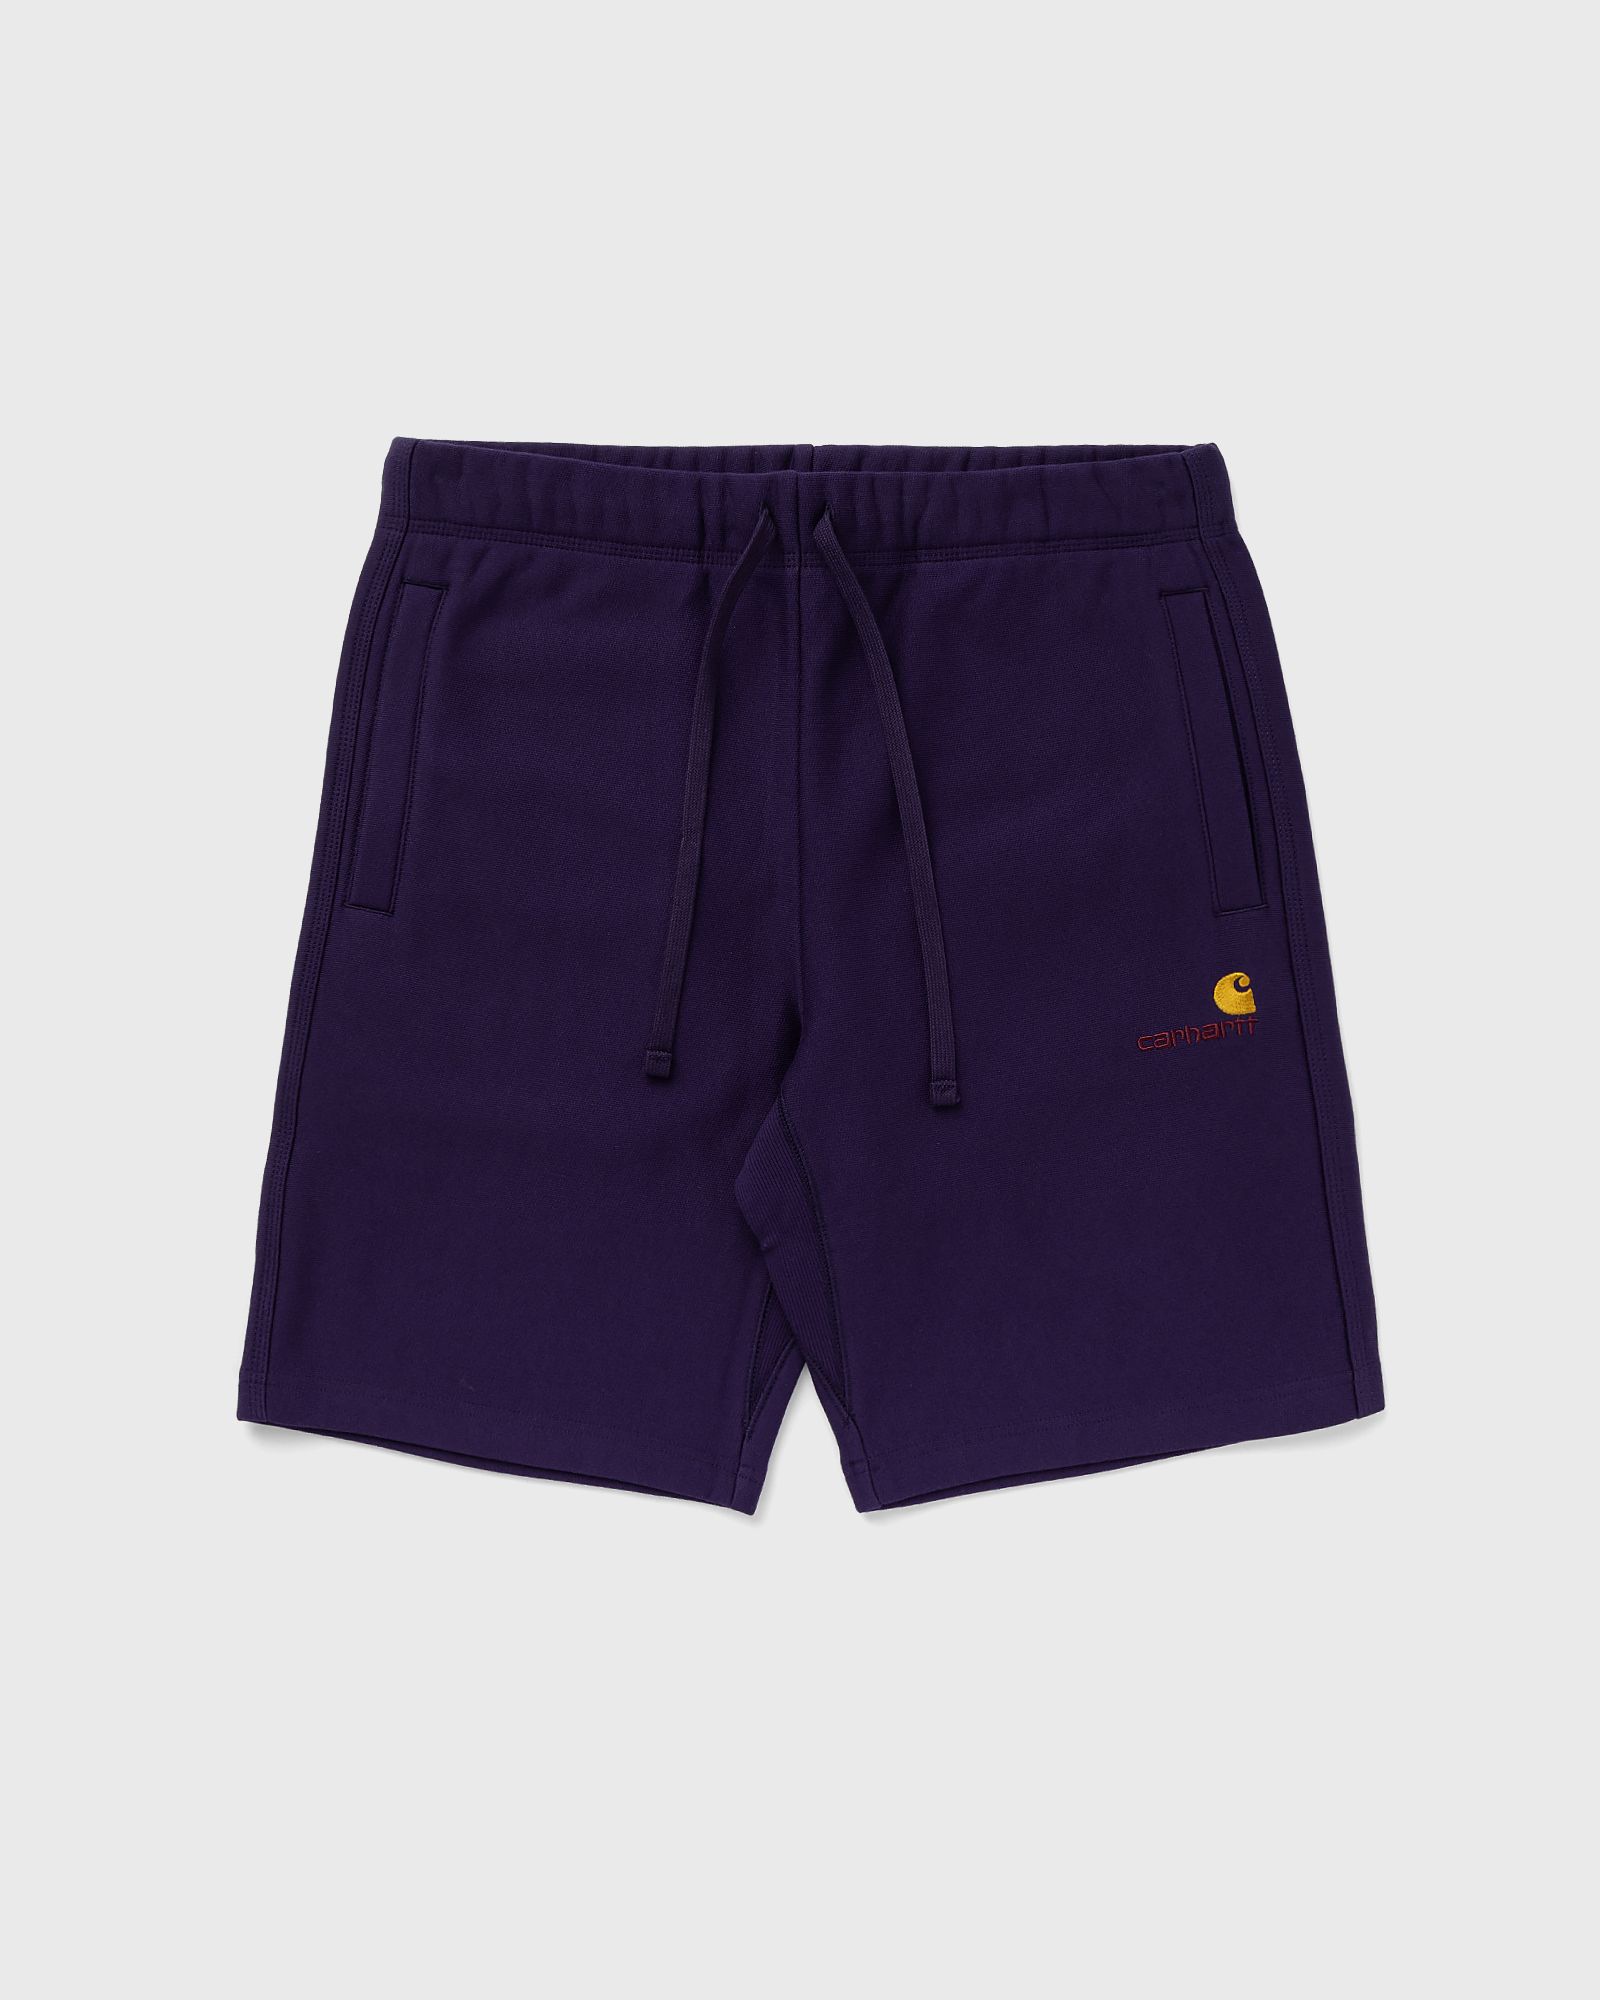 Carhartt WIP - american script sweat short men sport & team shorts purple in größe:l